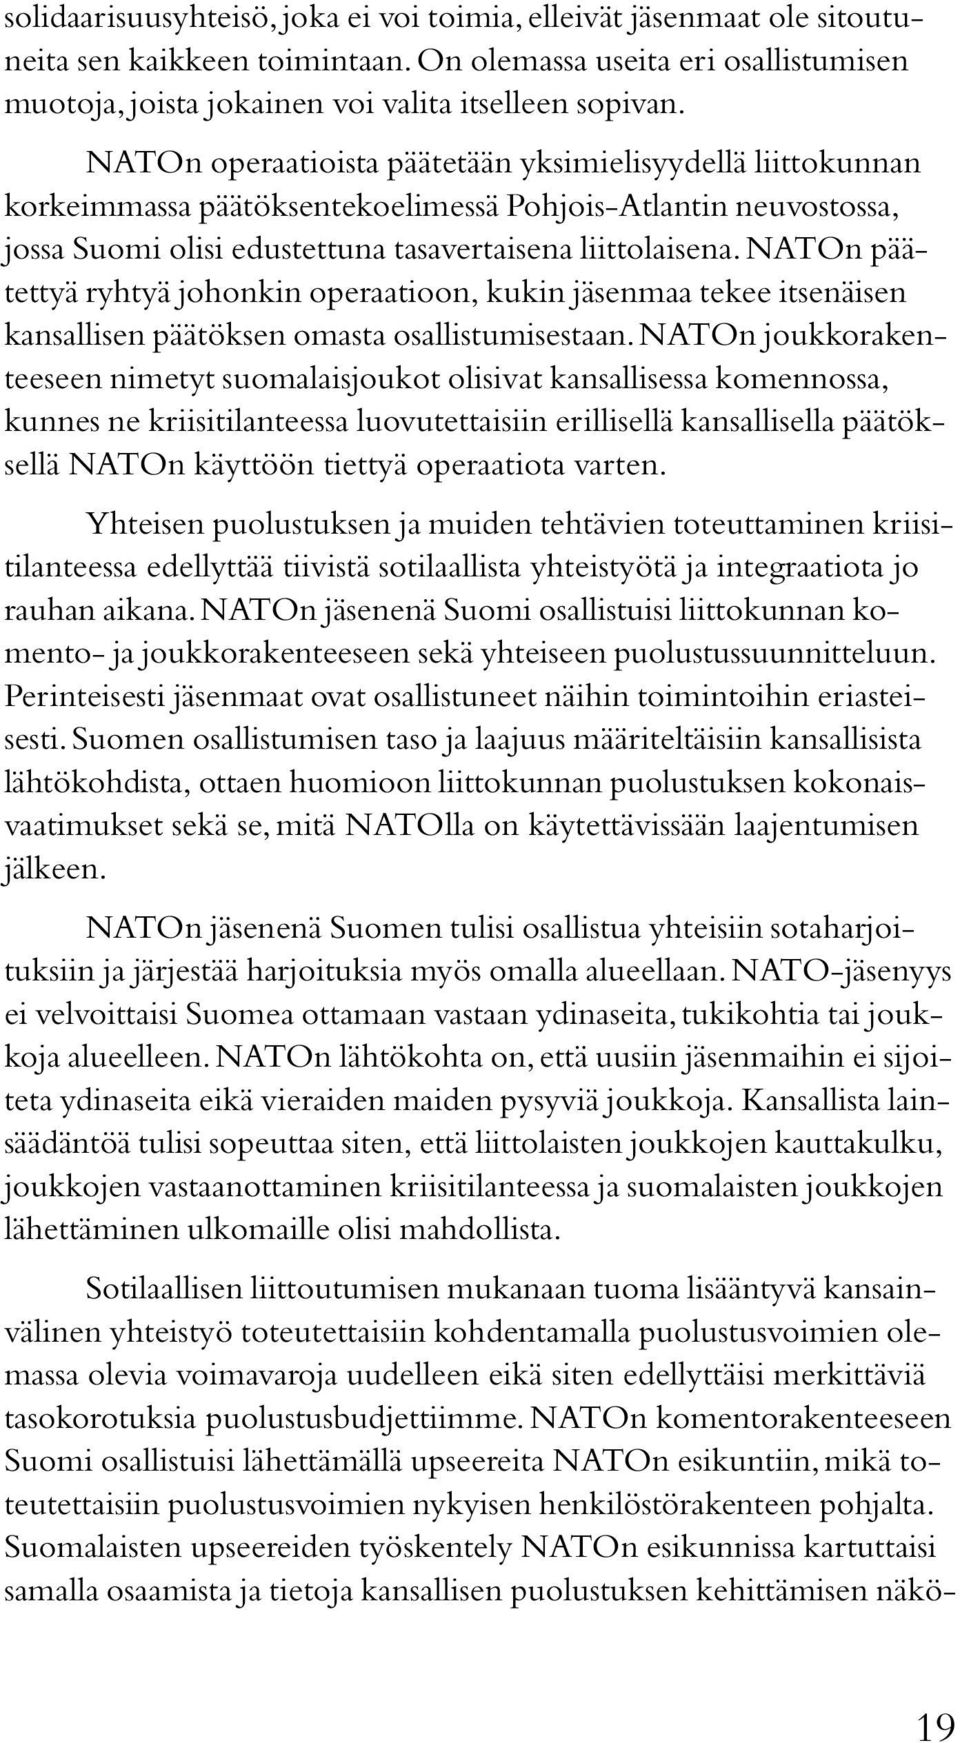 NATOn päätettyä ryhtyä johonkin operaatioon, kukin jäsenmaa tekee itsenäisen kansallisen päätöksen omasta osallistumisestaan.